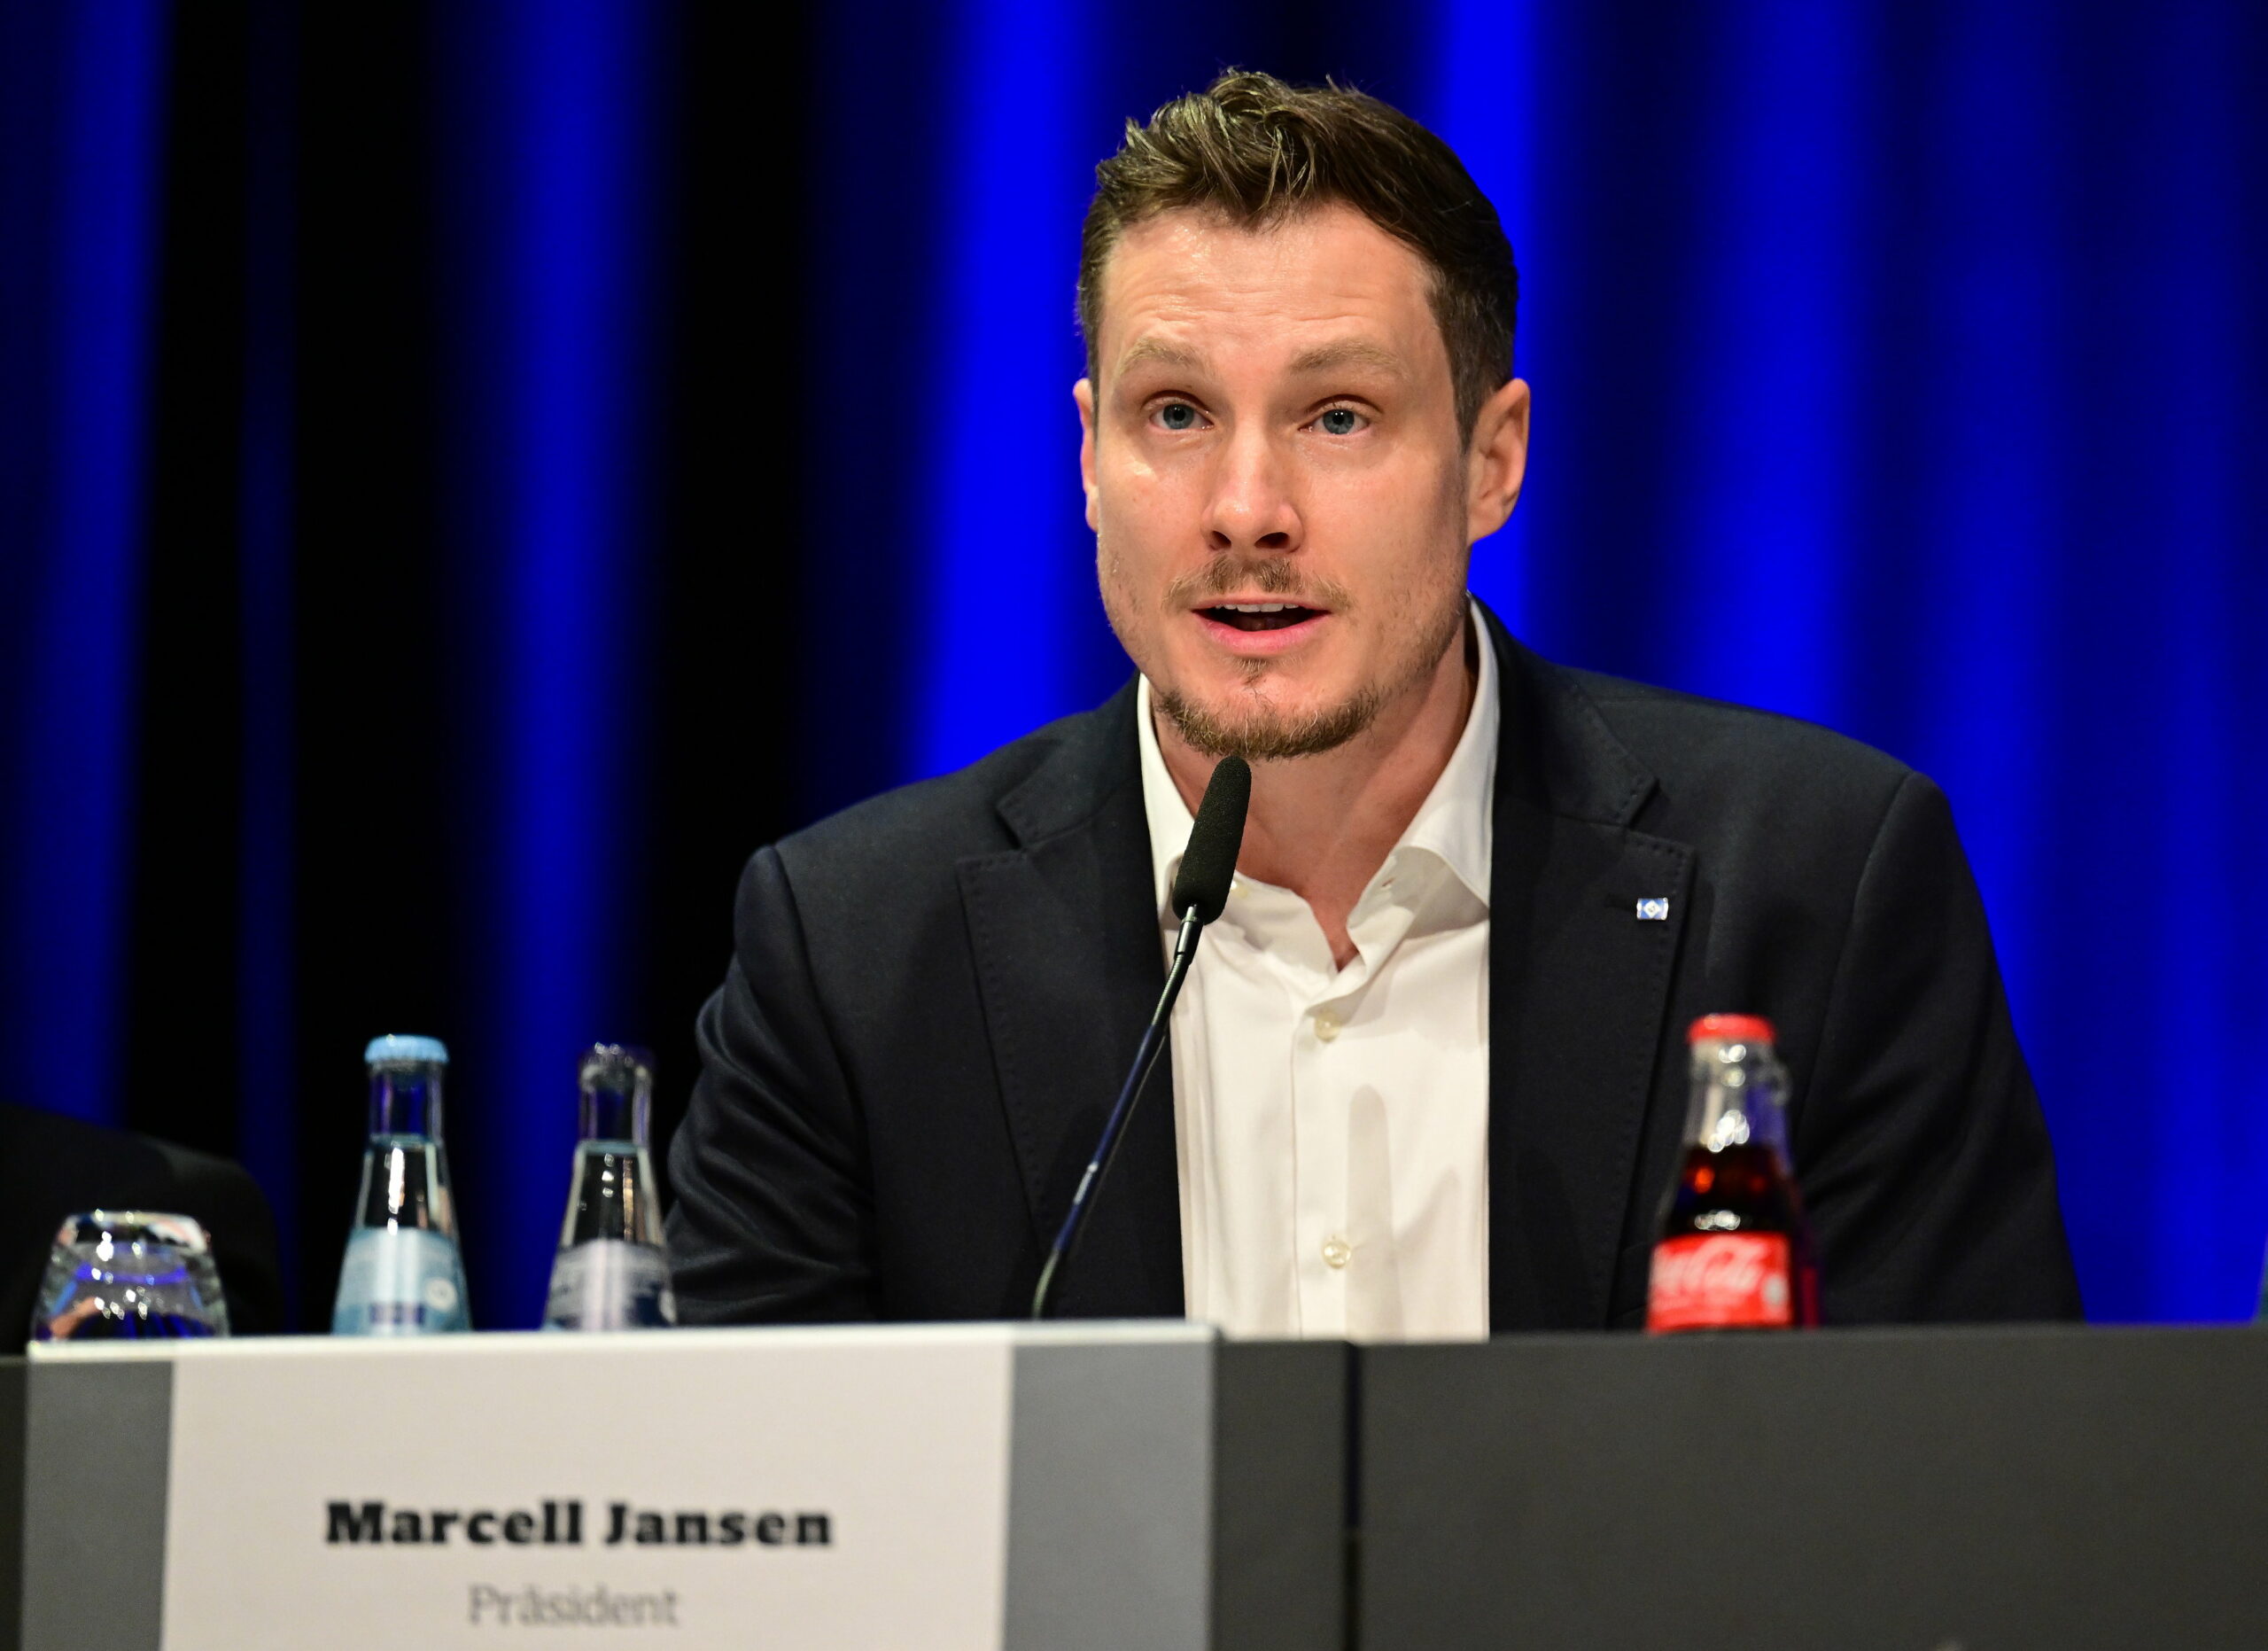 Erst am 21. Januar wehrte sich Marcell Jansen erfolgreich gegen eine Abwahl durch die HSV-Mitglieder.